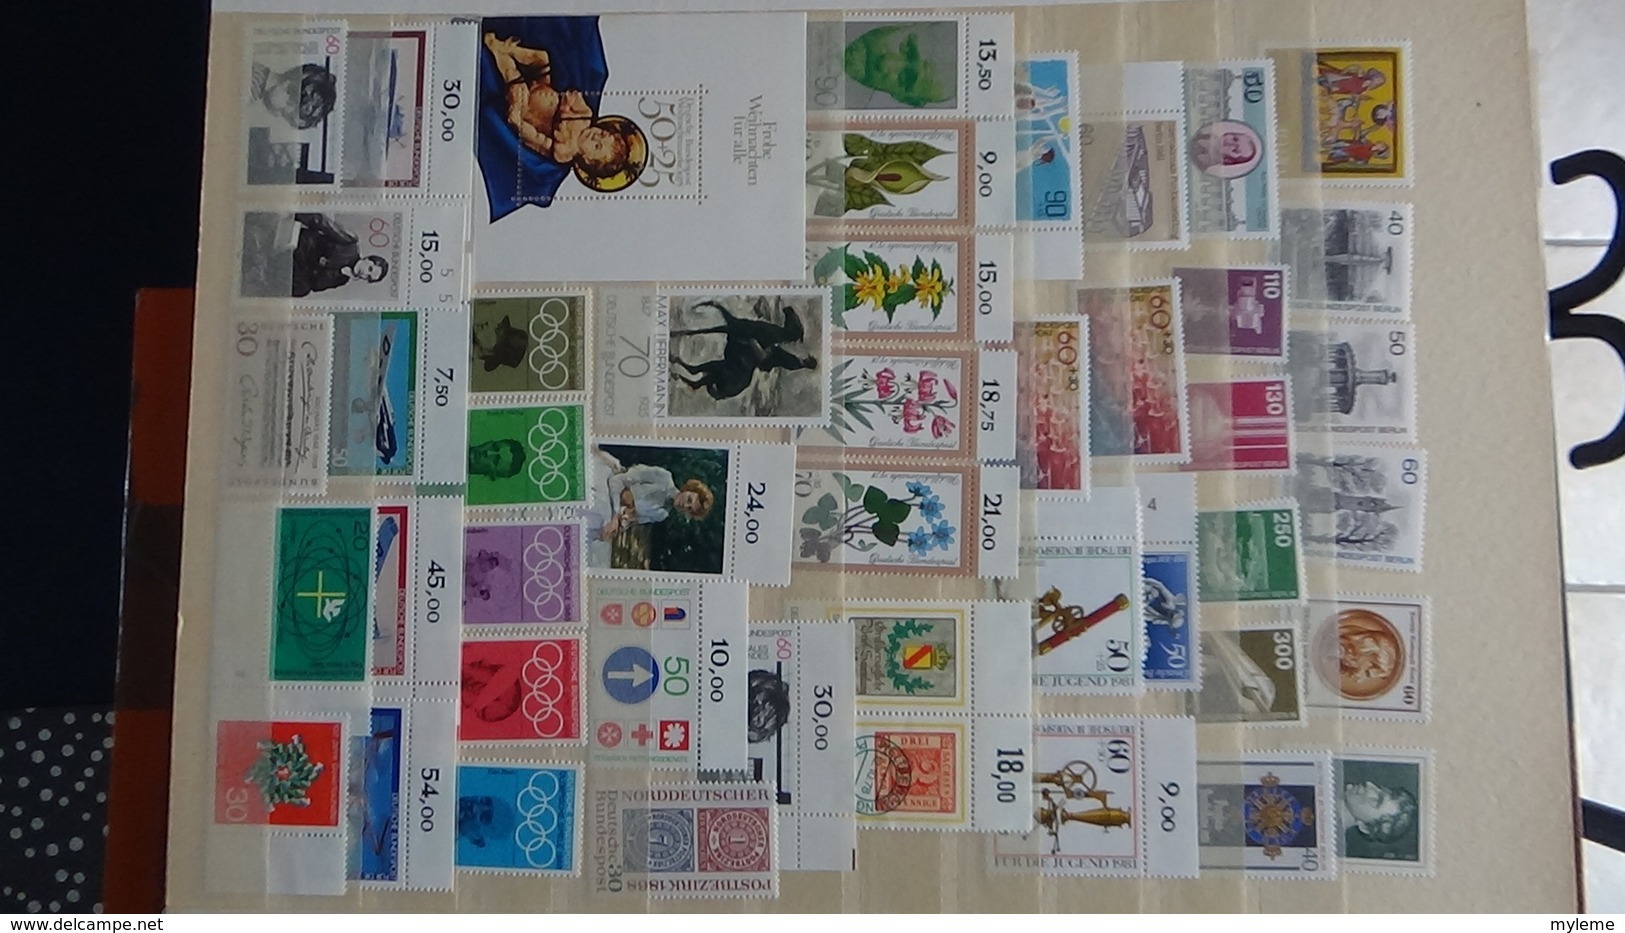 B367 Collection de timbres d'Allemagne ** dont bonnes petites valeurs. A saisir  !!!